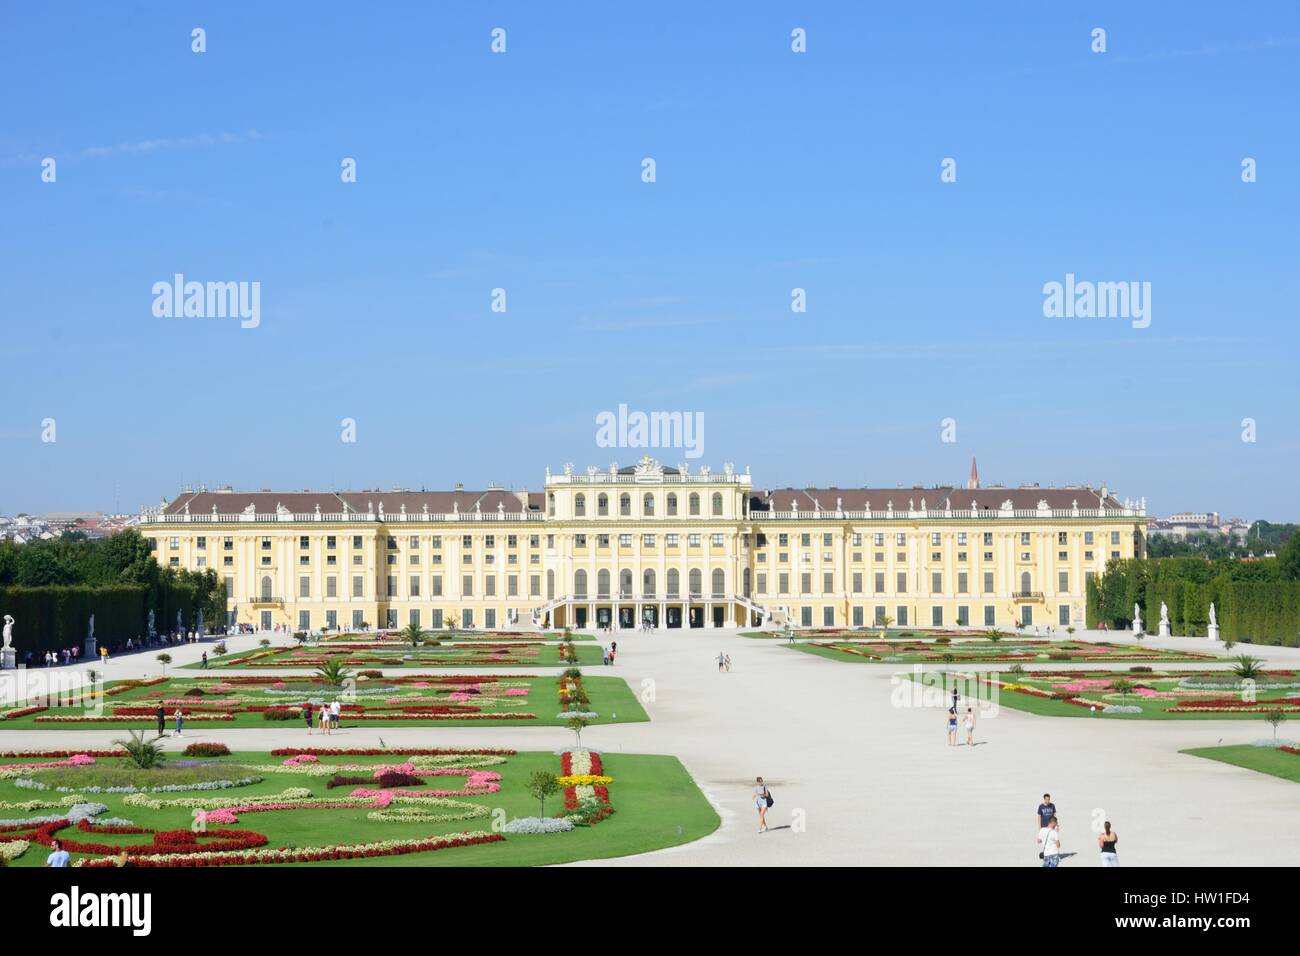 El Palacio de Schönbrunn Viena Austria el 29 de agosto de 2015: el palacio de Schönbrunn Viena desde atrás Foto de stock